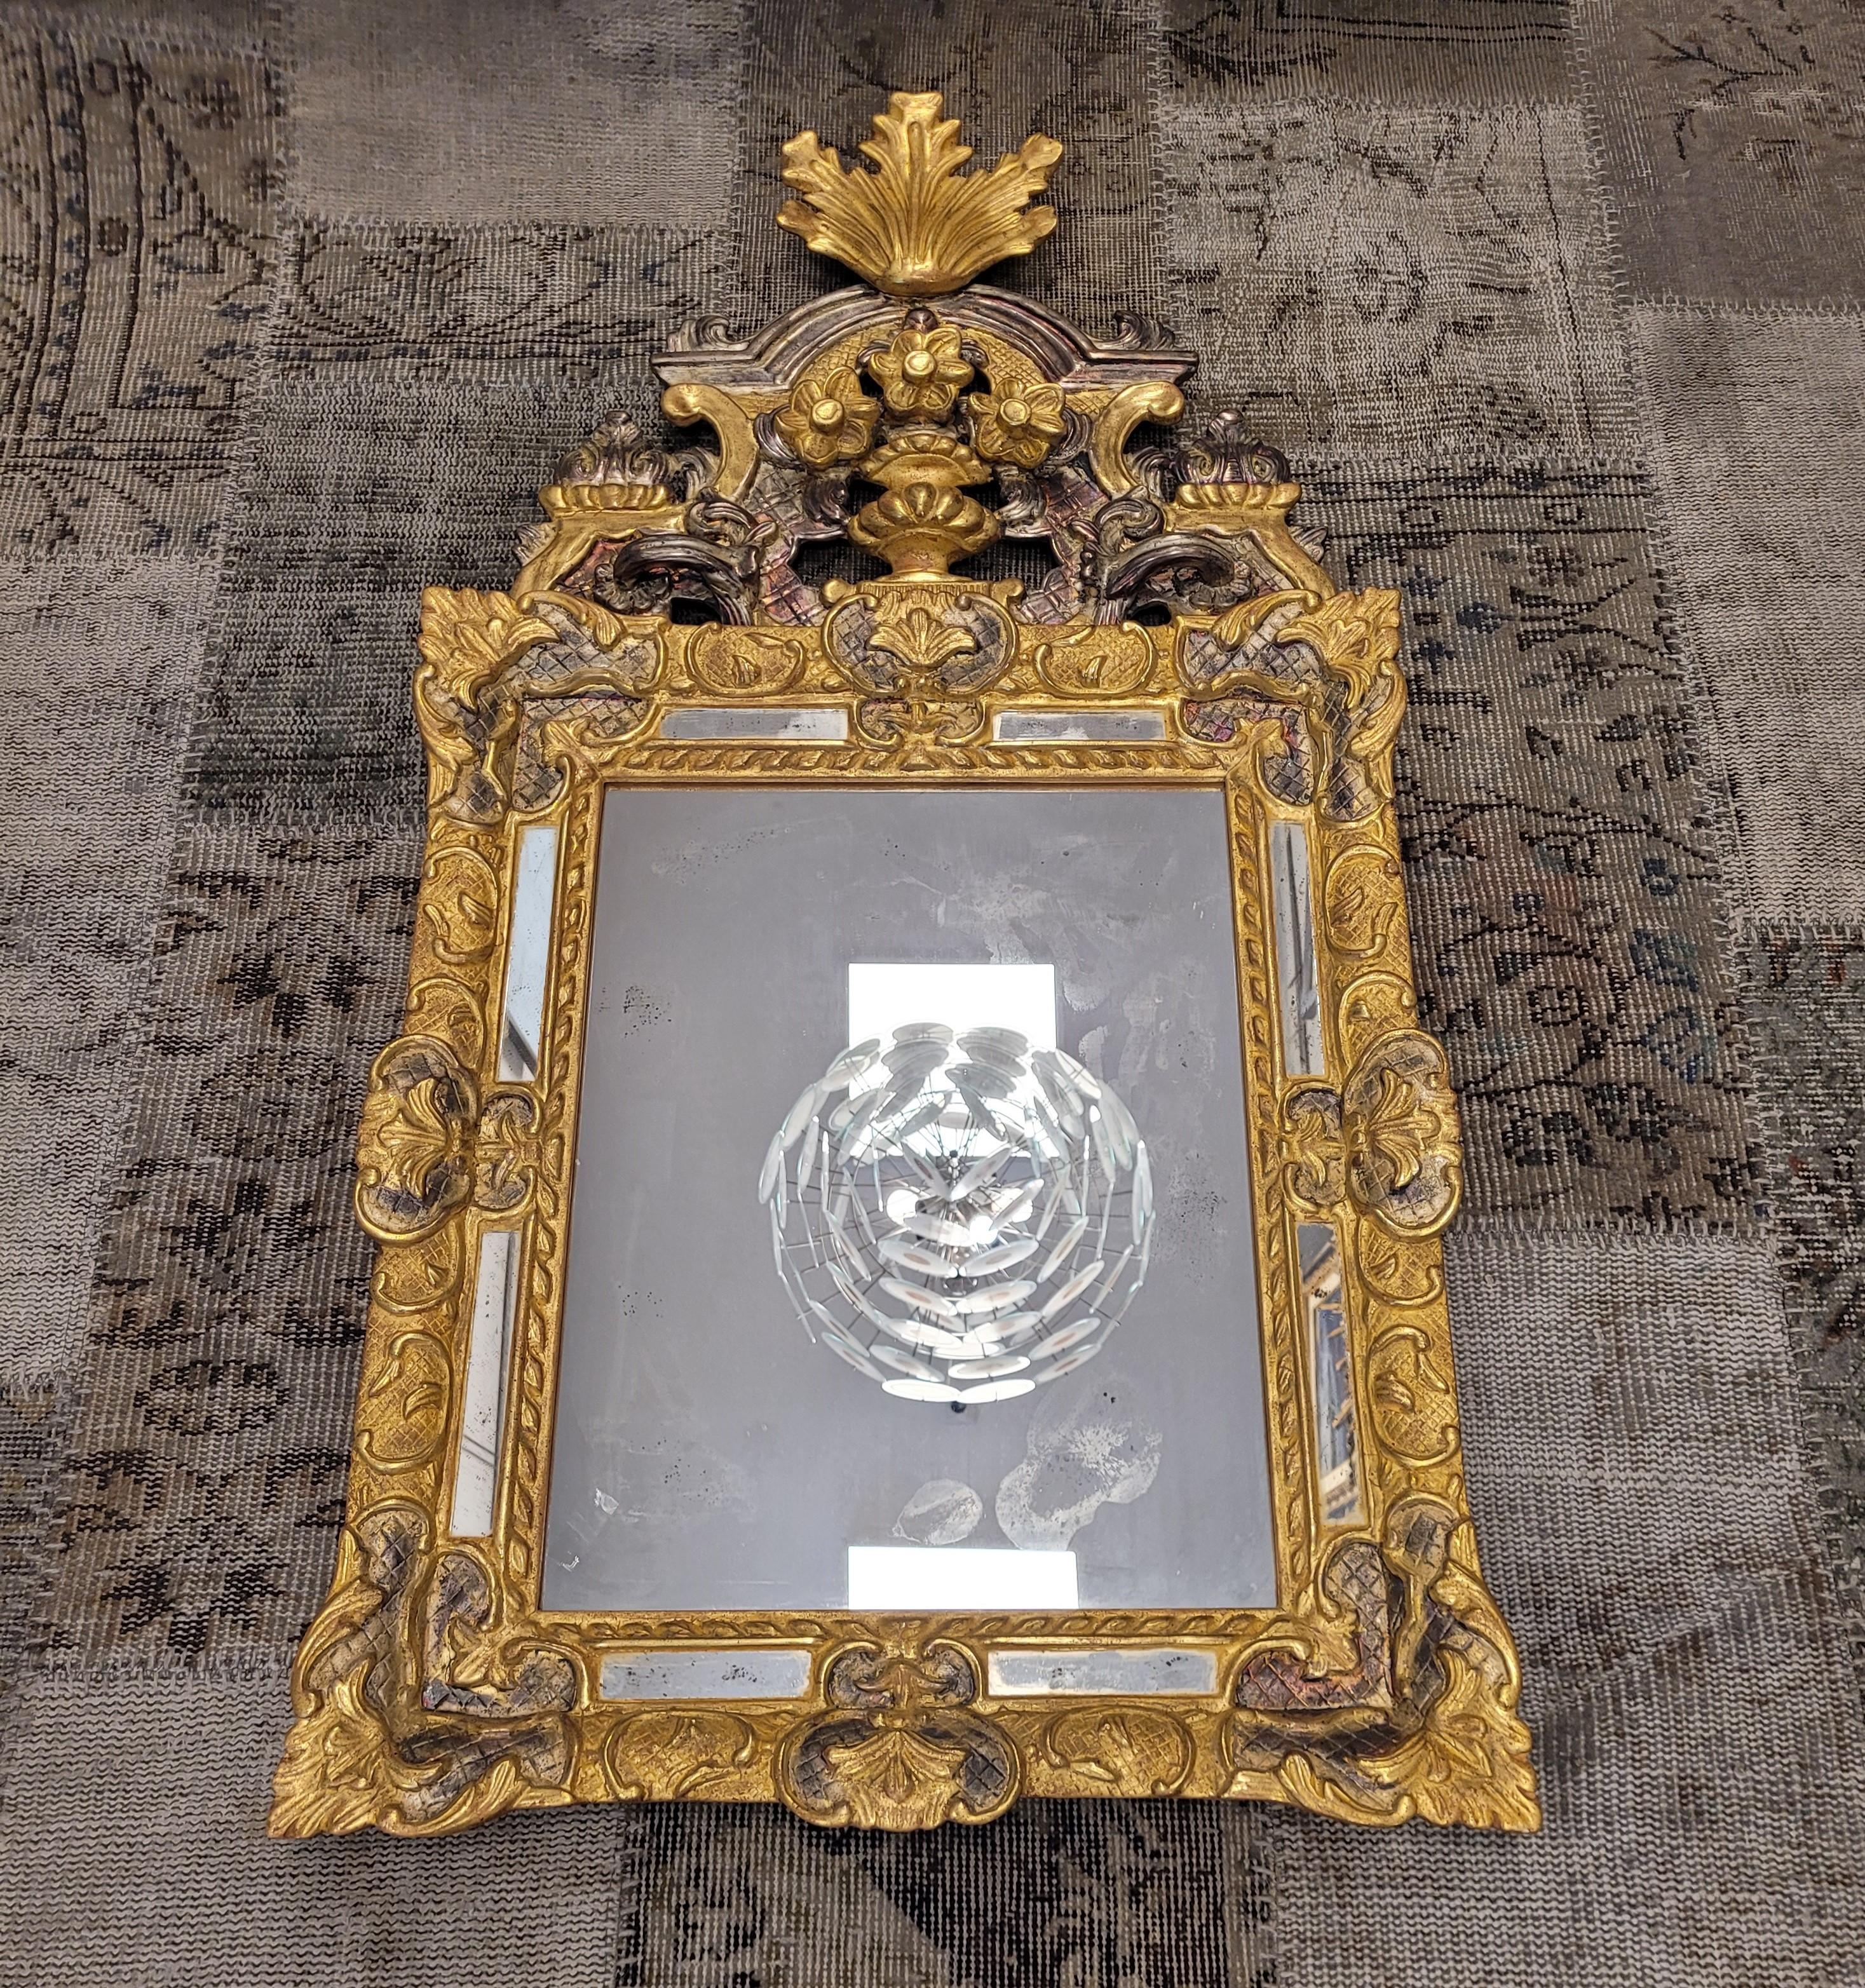 Miroir exceptionnel et vraiment magnifique réalisé par un  Maître artisan français, suivant les miroirs extraordinaires Louis XIV (1643 - 1715). Fabriqué en argent finement sculpté et doré.  bois avec un effet vieilli. Corps avec un profil